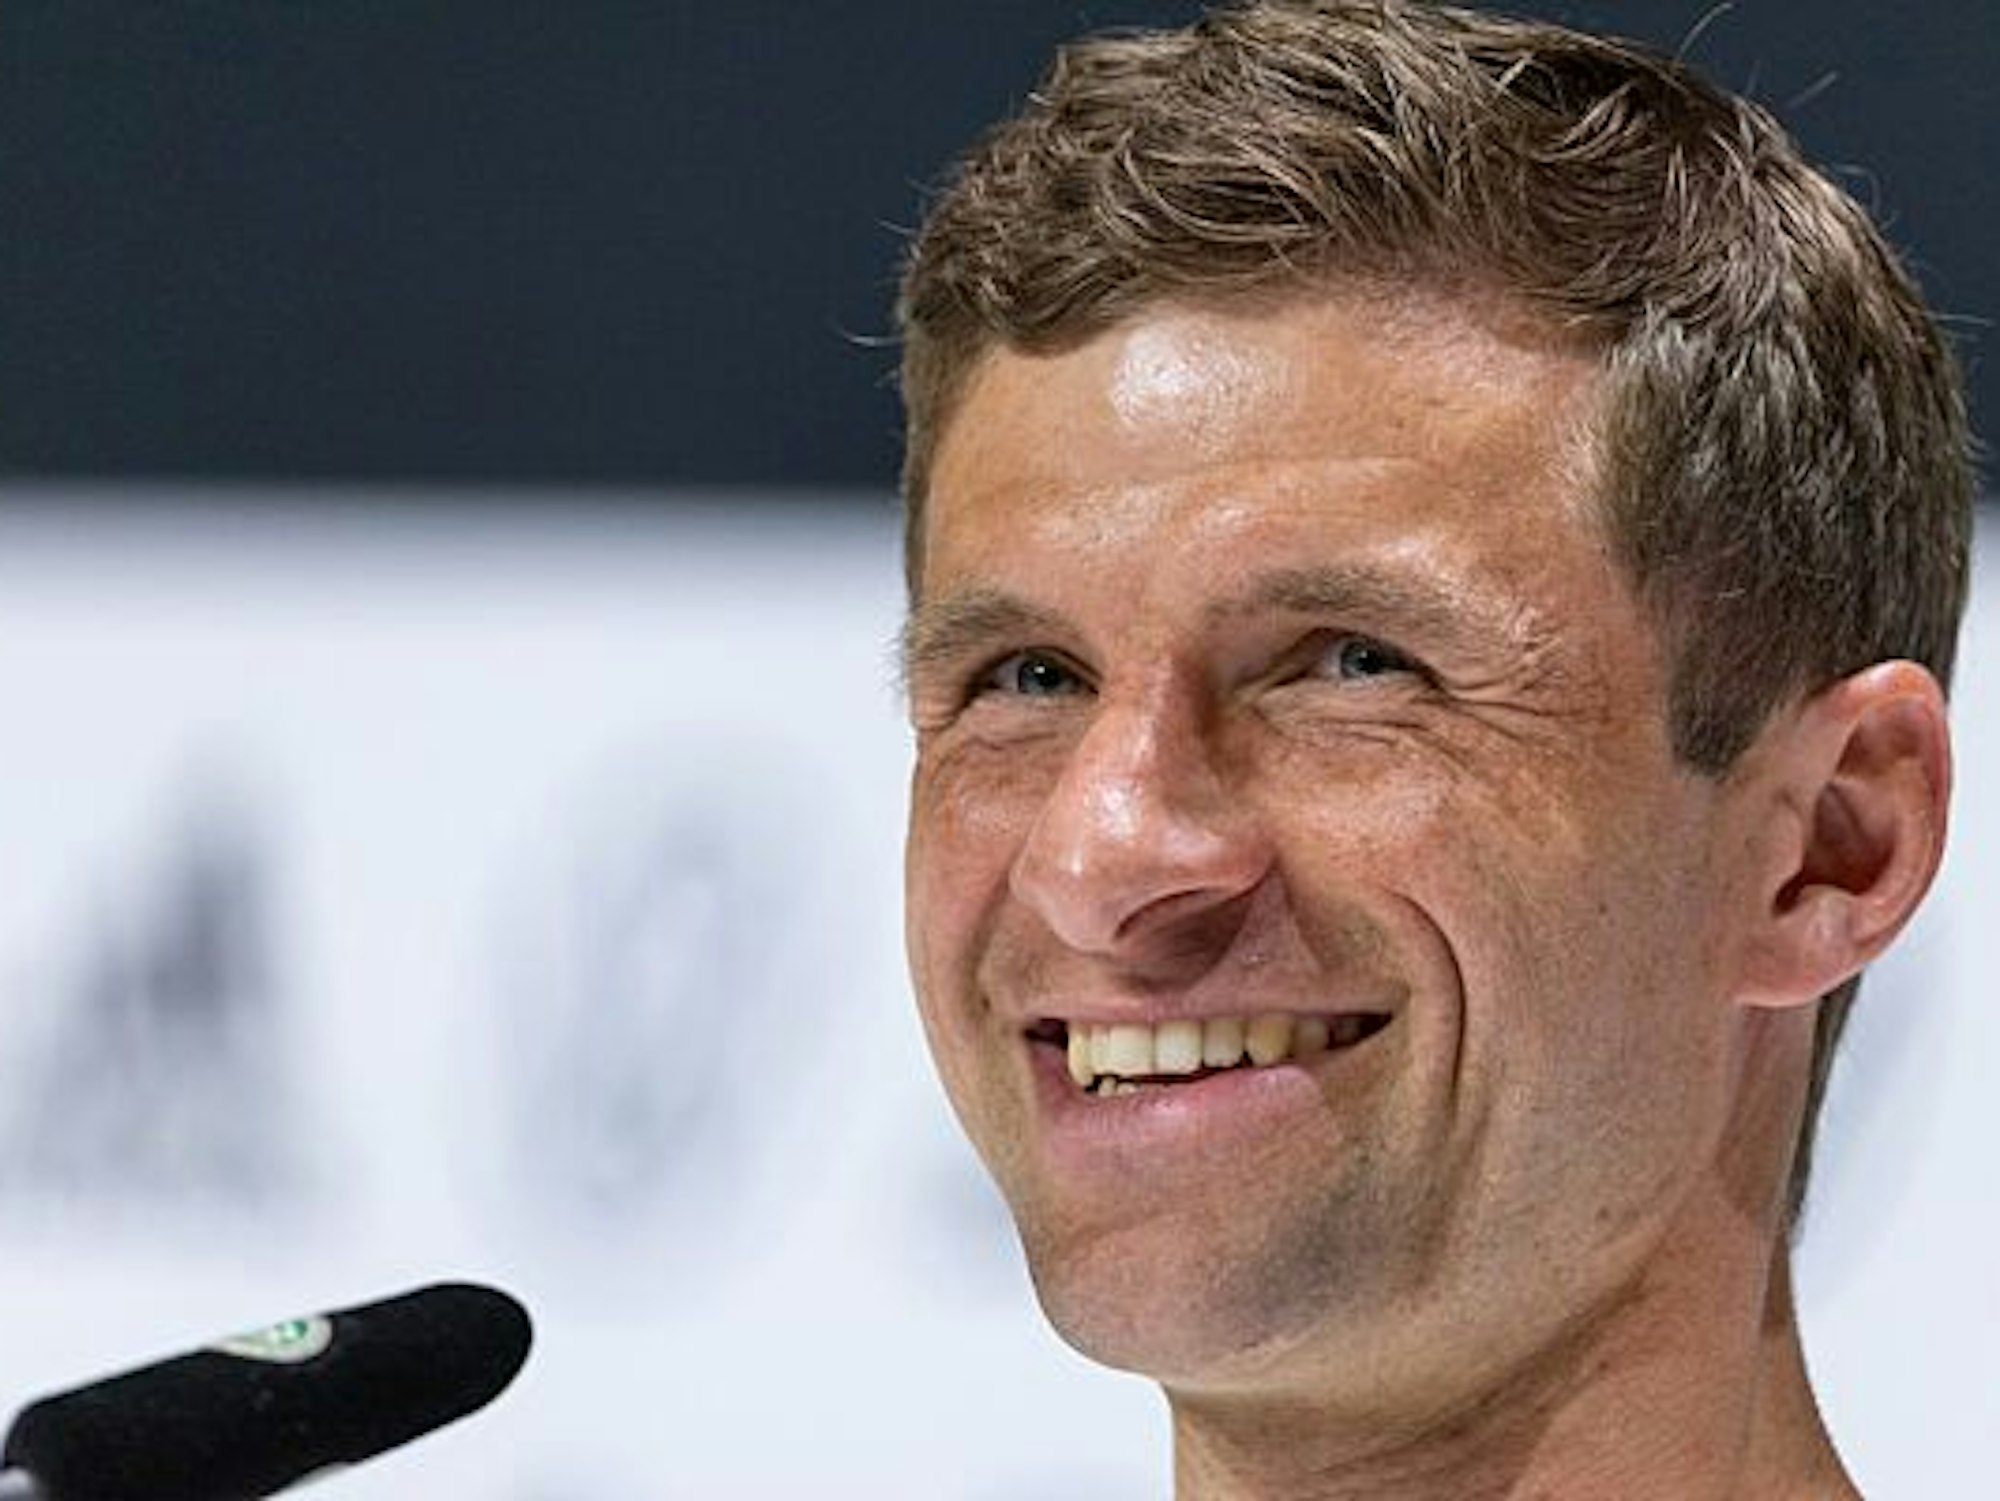 Der Spieler Thomas Müller nimmt an einer Pressekonferenz teil. Er lächelt herzlich.